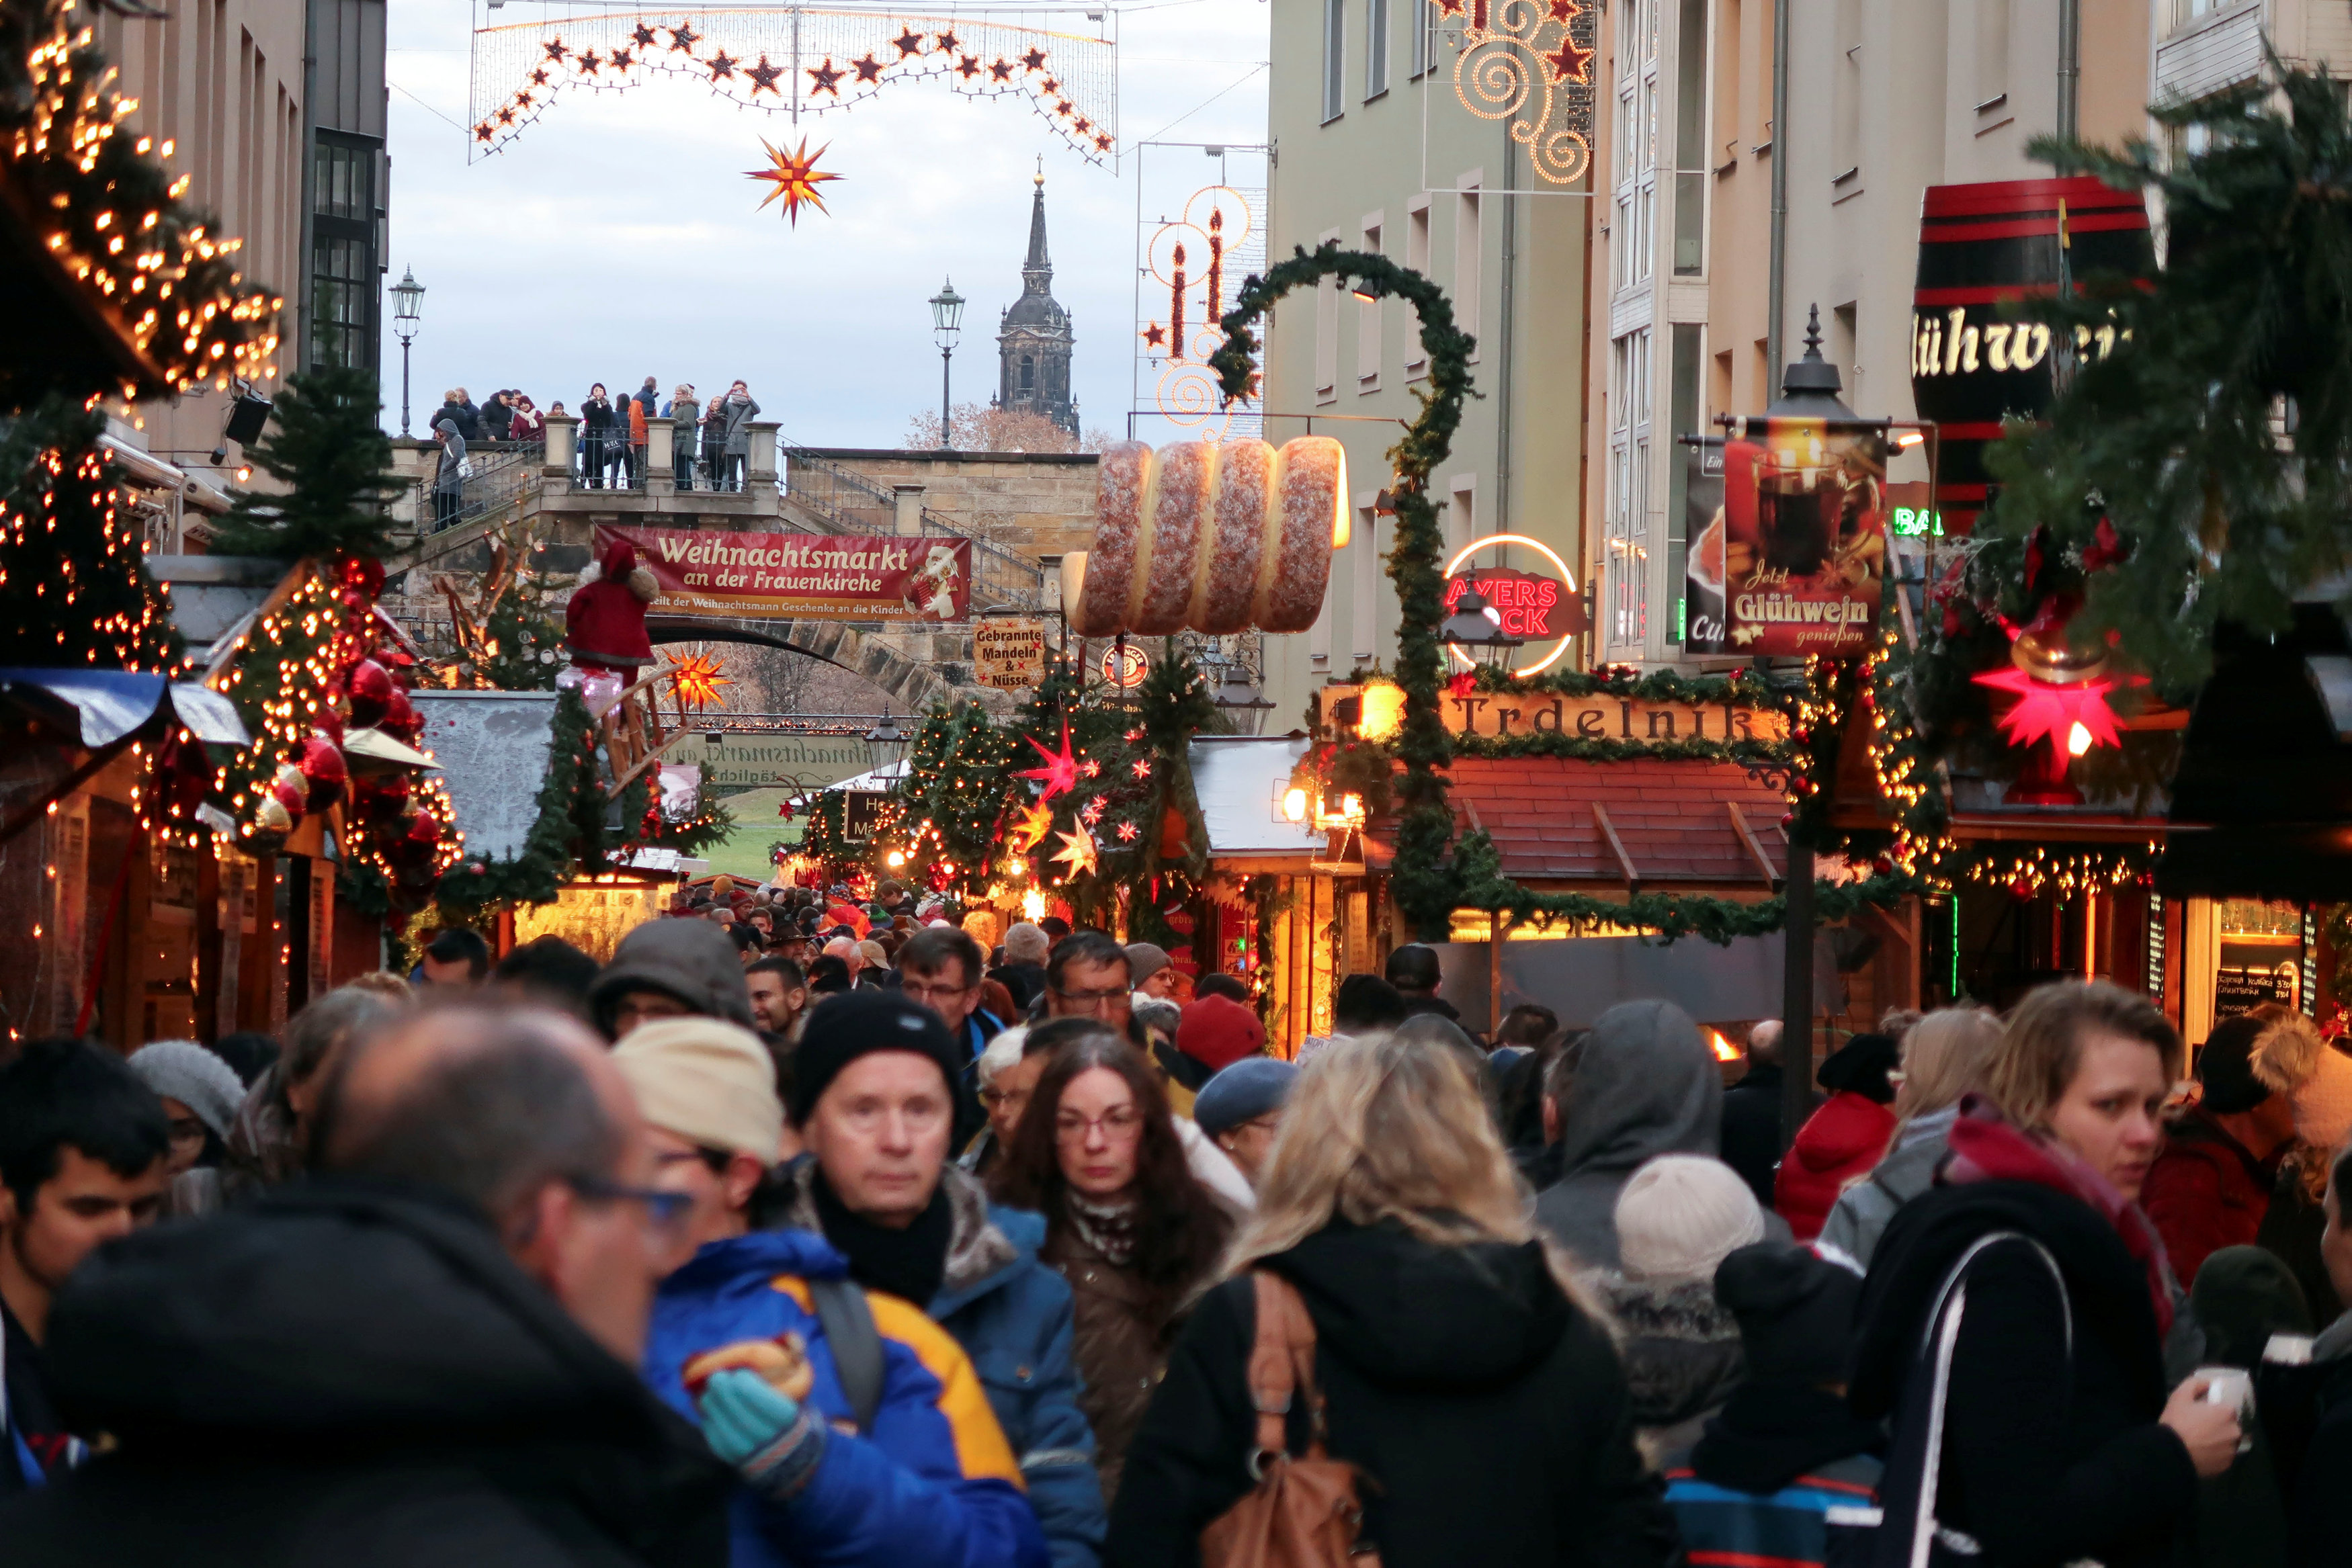 أجواء مبهجة فى أسواق عيد الميلاد بألمانيا (5)